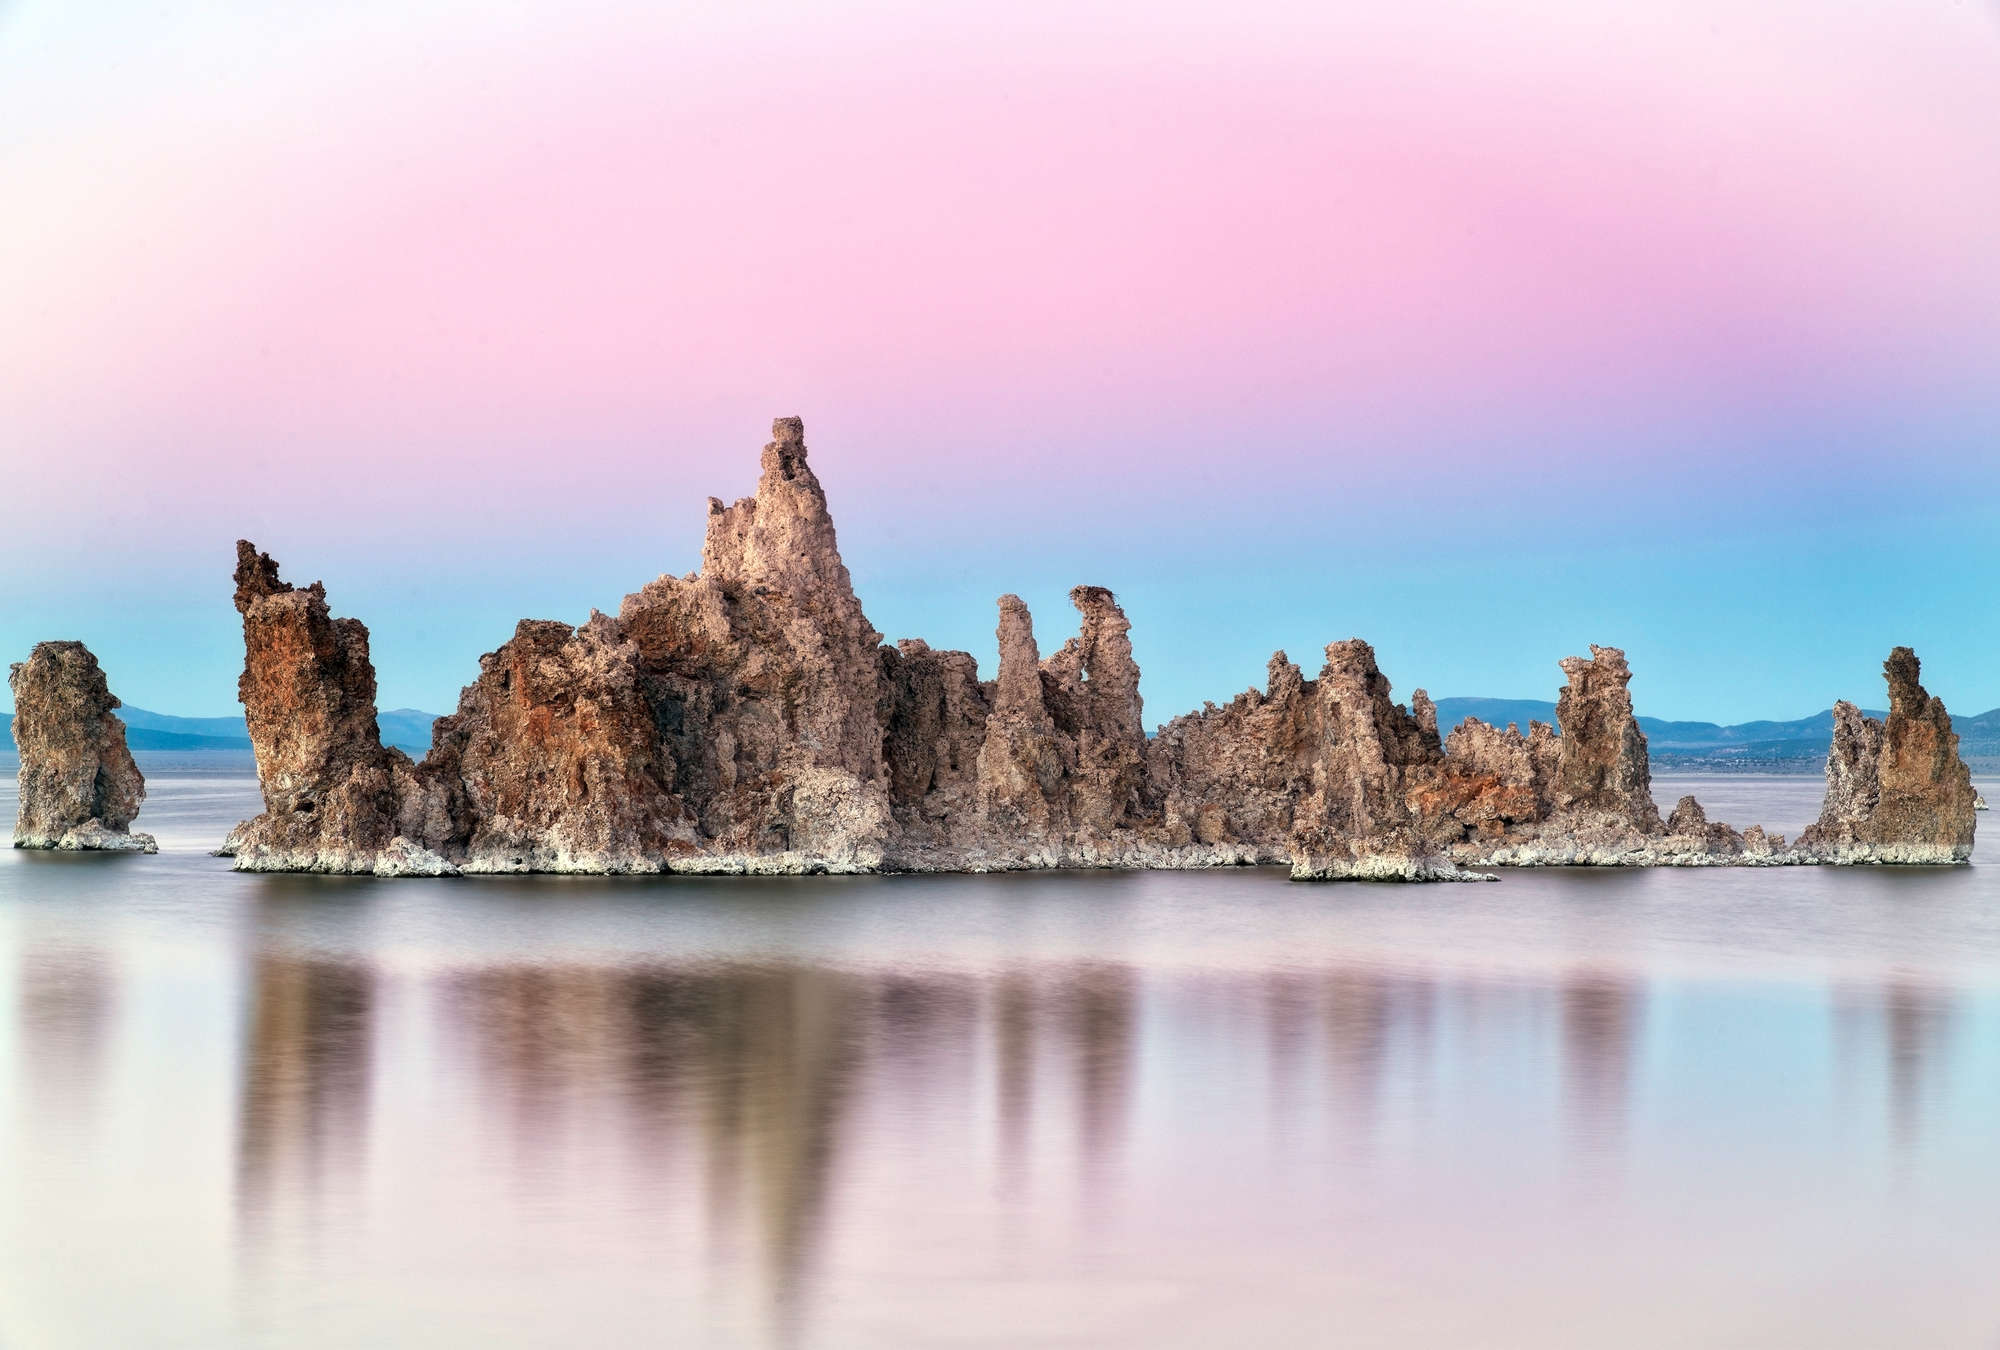             Fototapete Felsen im spiegelndem Wasser mit rosa Himmel
        